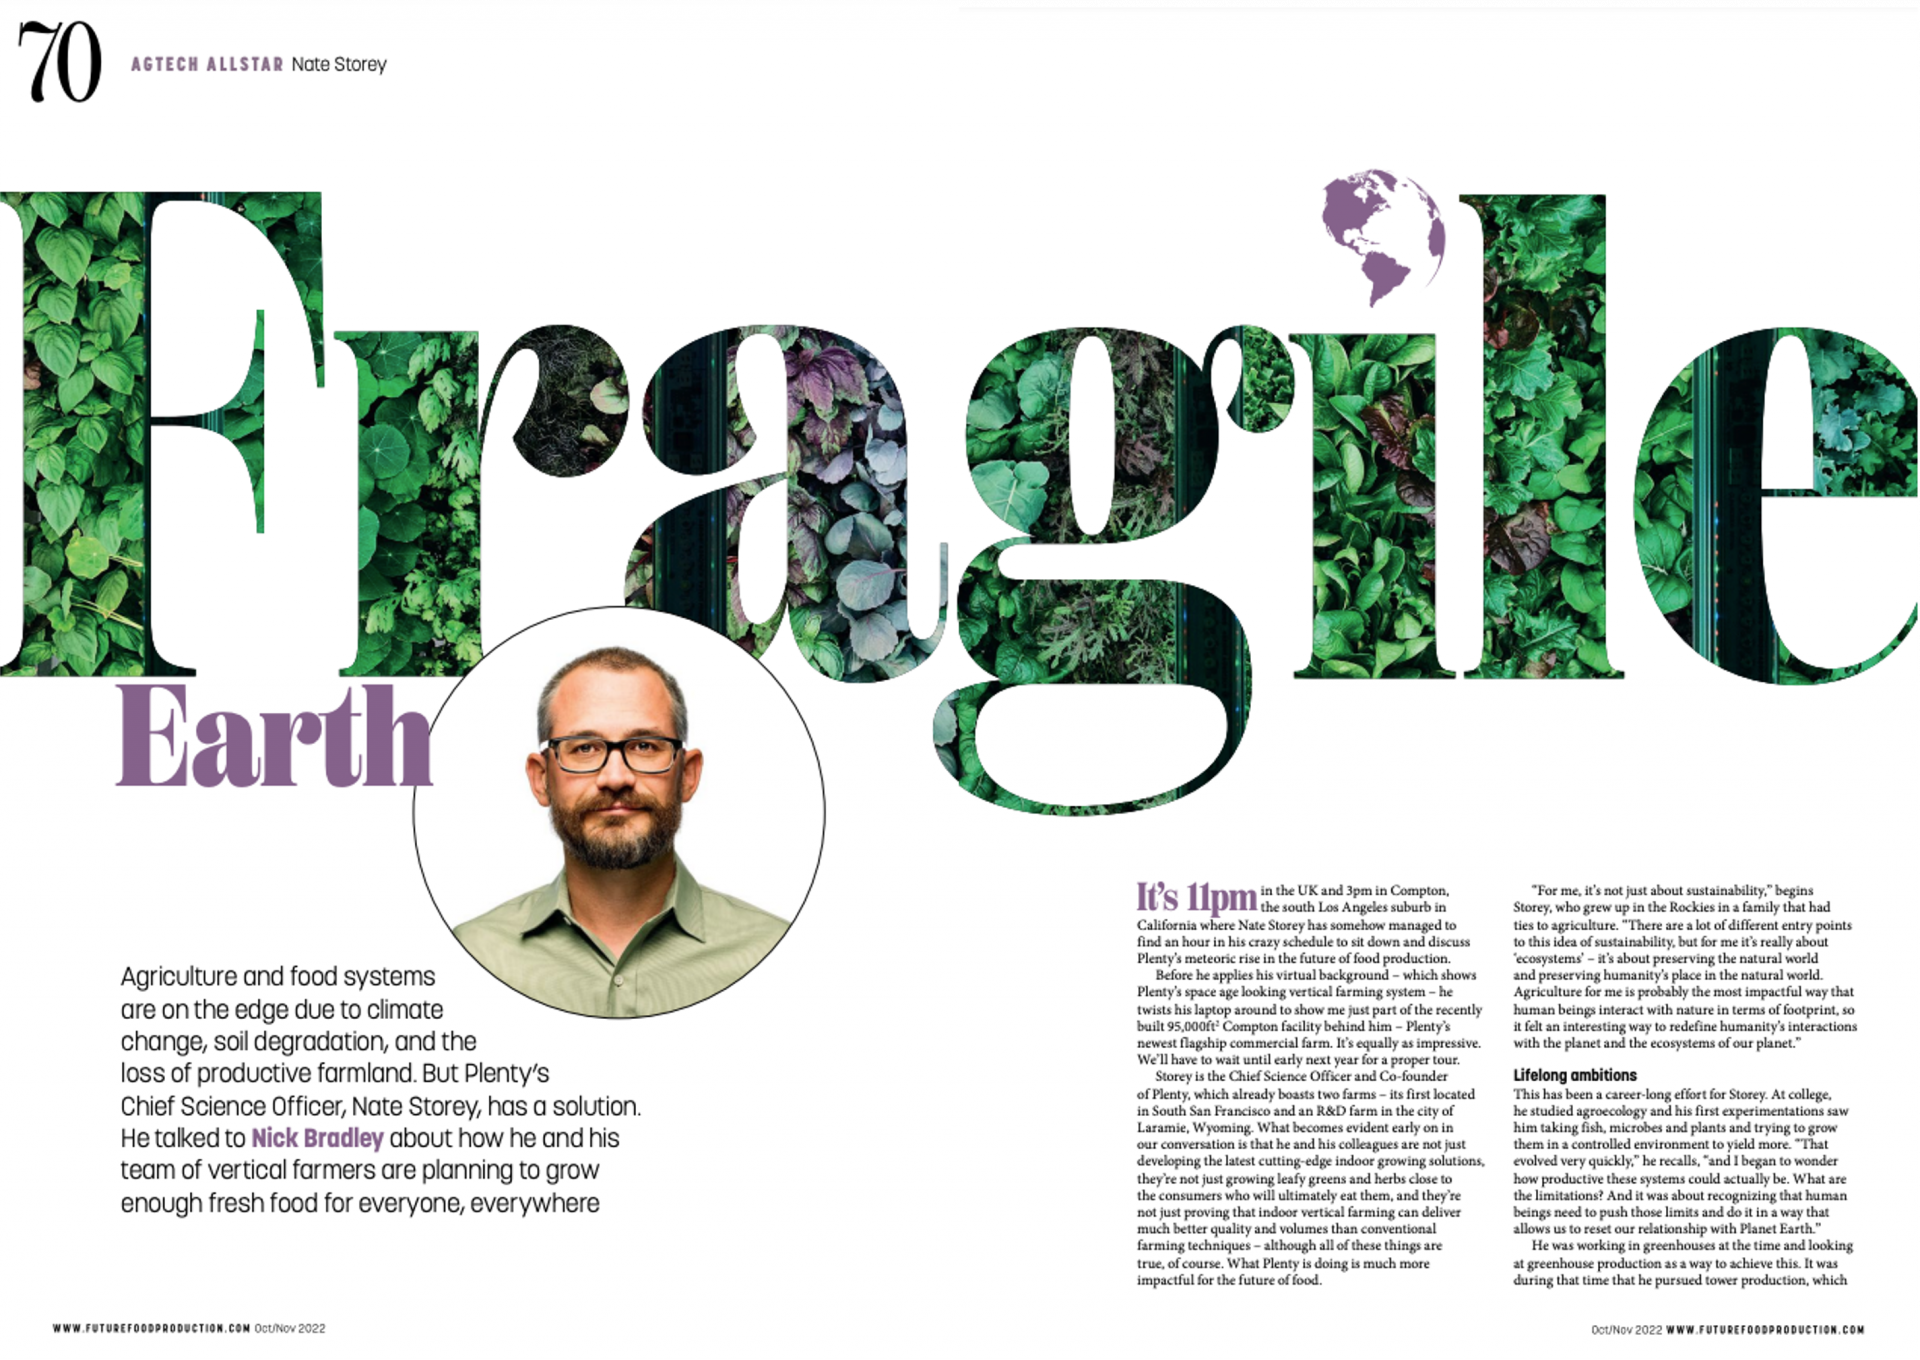 Future of Food Production Magazine: Fragile Earth